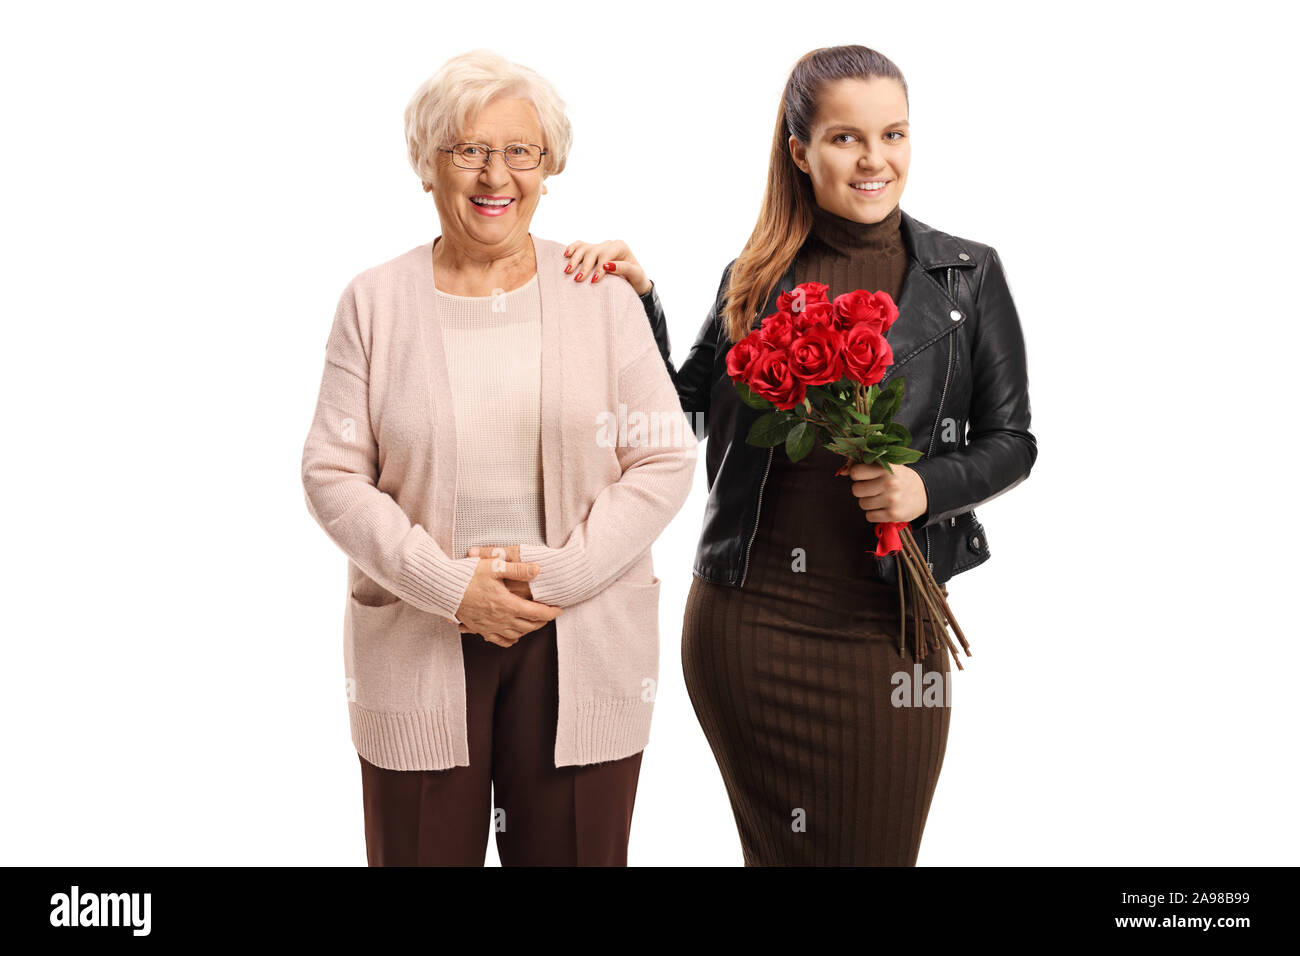 La nipote tenendo un mazzo di rose e in piedi accanto alla sua nonna isolata su sfondo bianco Foto Stock